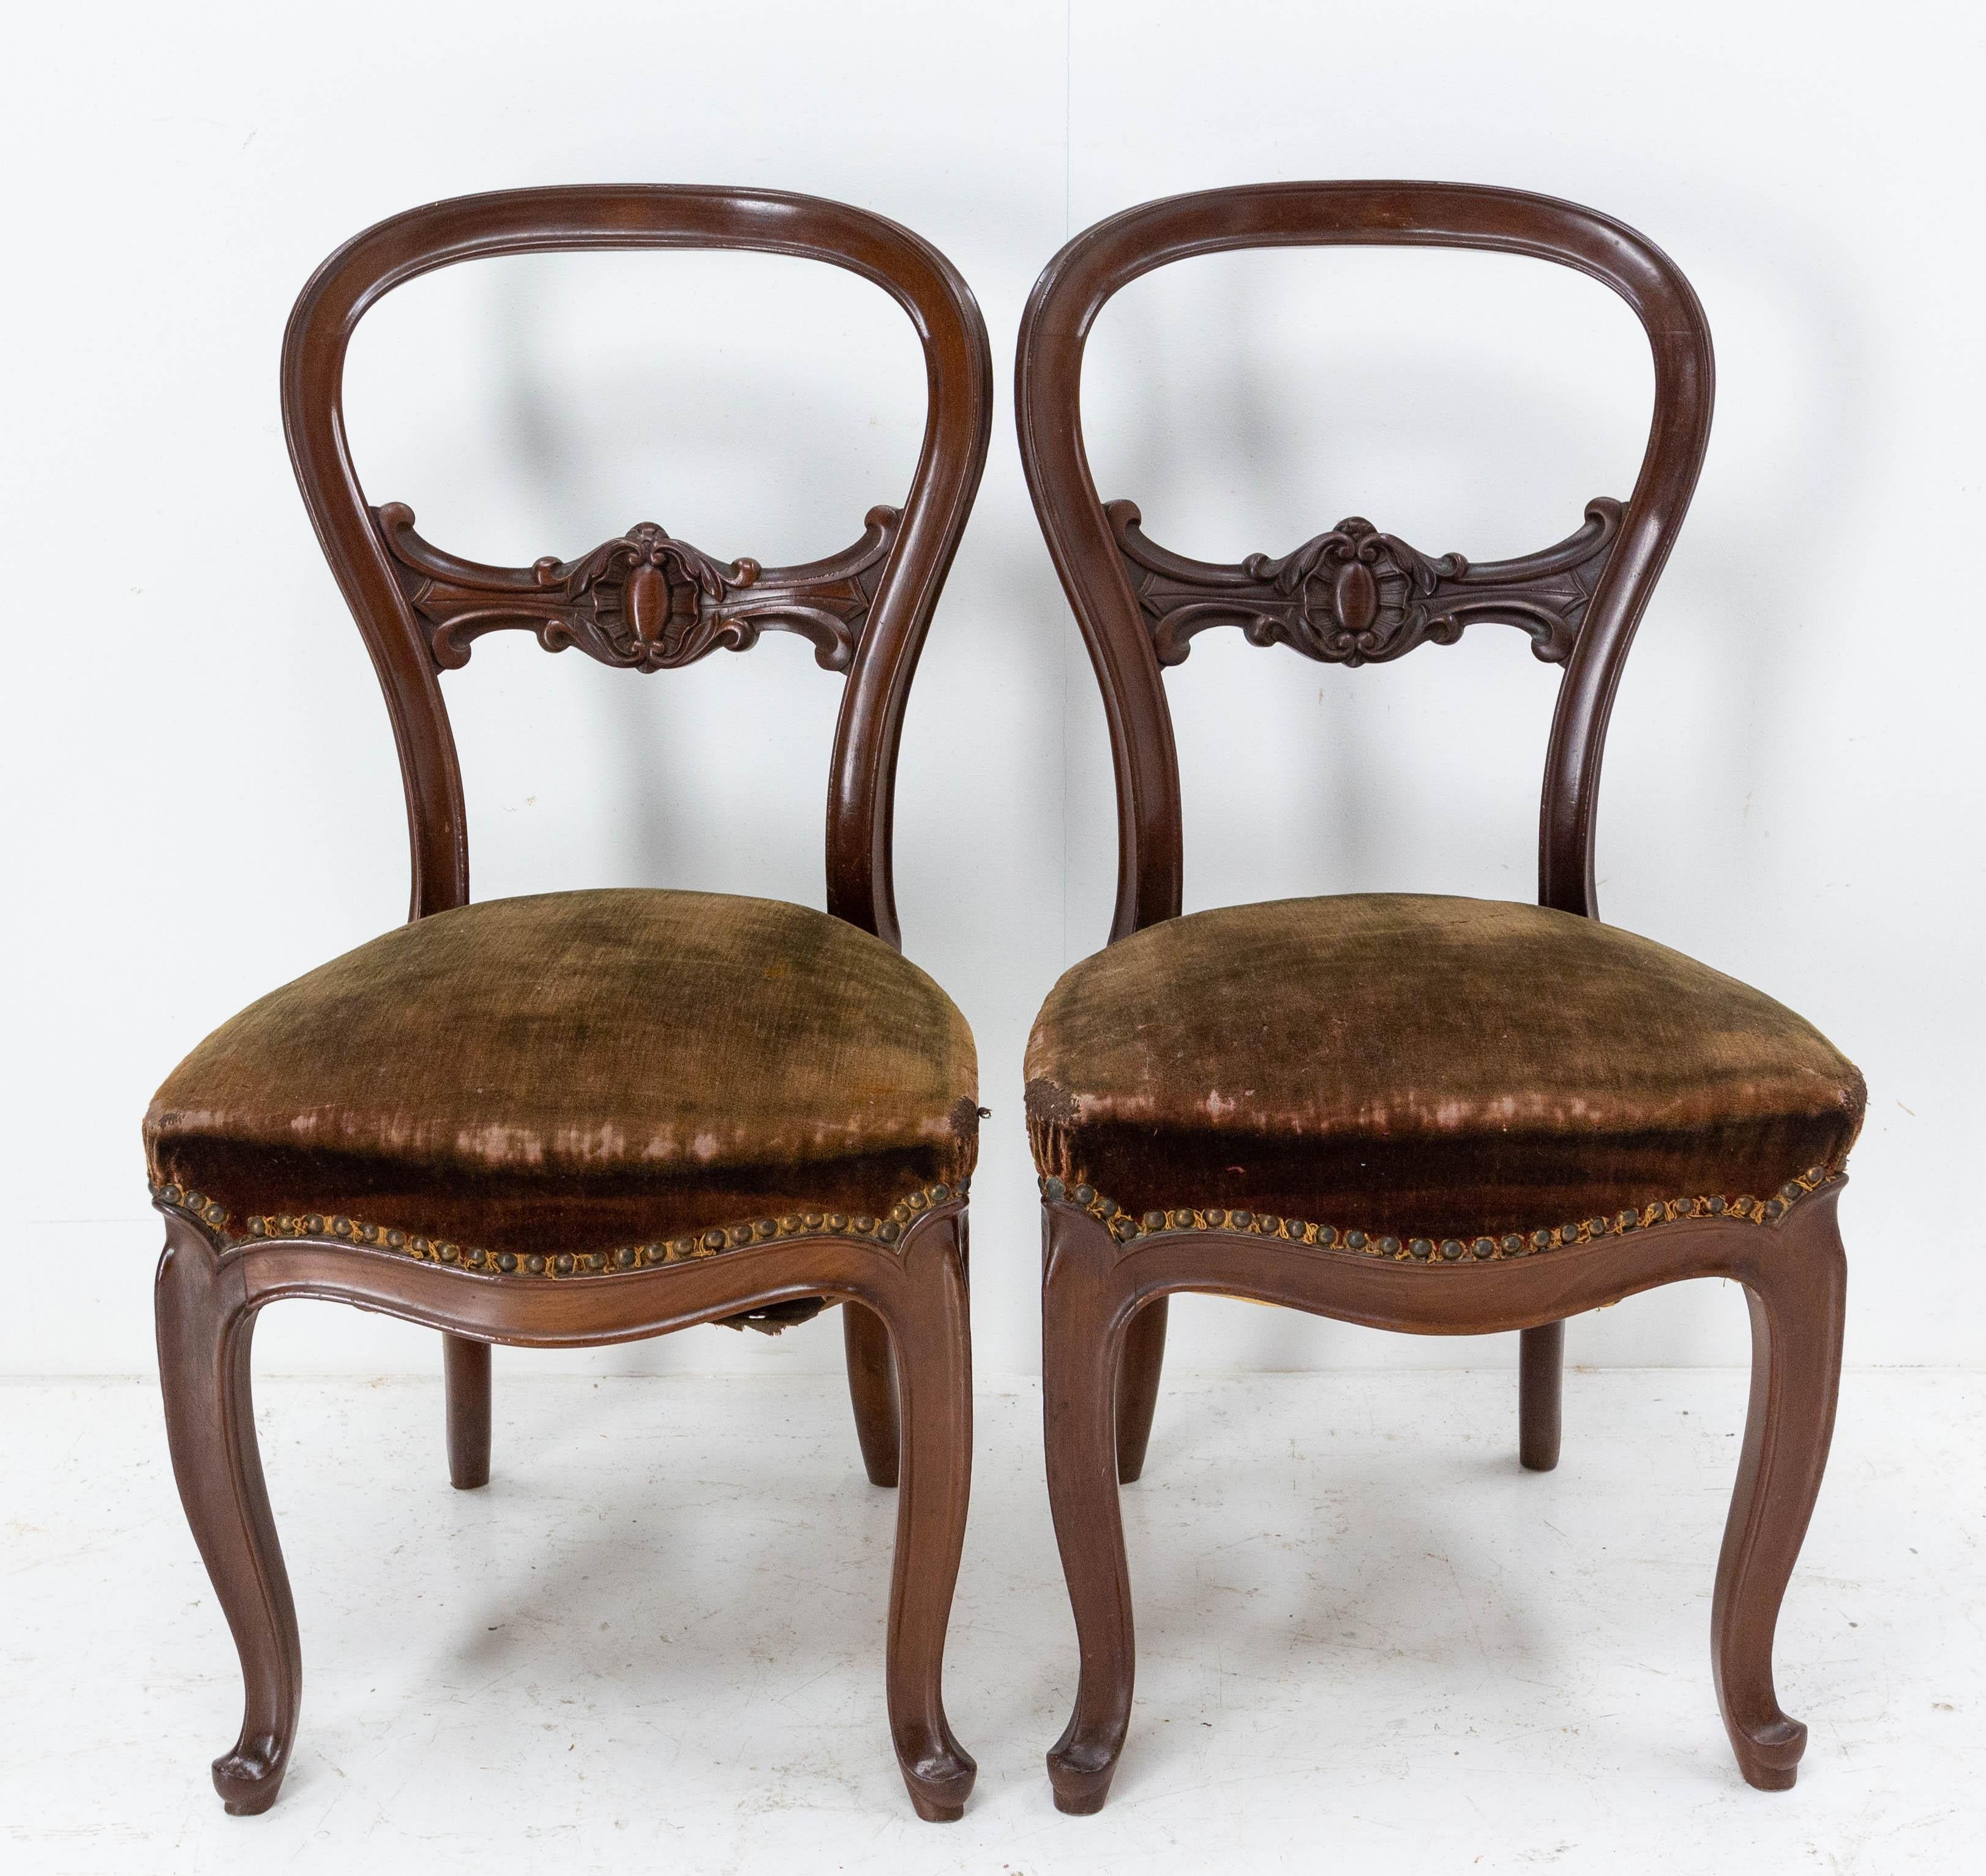 Napoleon III Französisch gepolstert Paar exotischen Holz und Samt Stühle Ende des 19. Jahrhunderts.
Die Rückseiten sind sehr fein aufgeschnitten.
Die Stühle können für mehr Authentizität so verwendet werden, wie sie stehen, aber der Samt kann